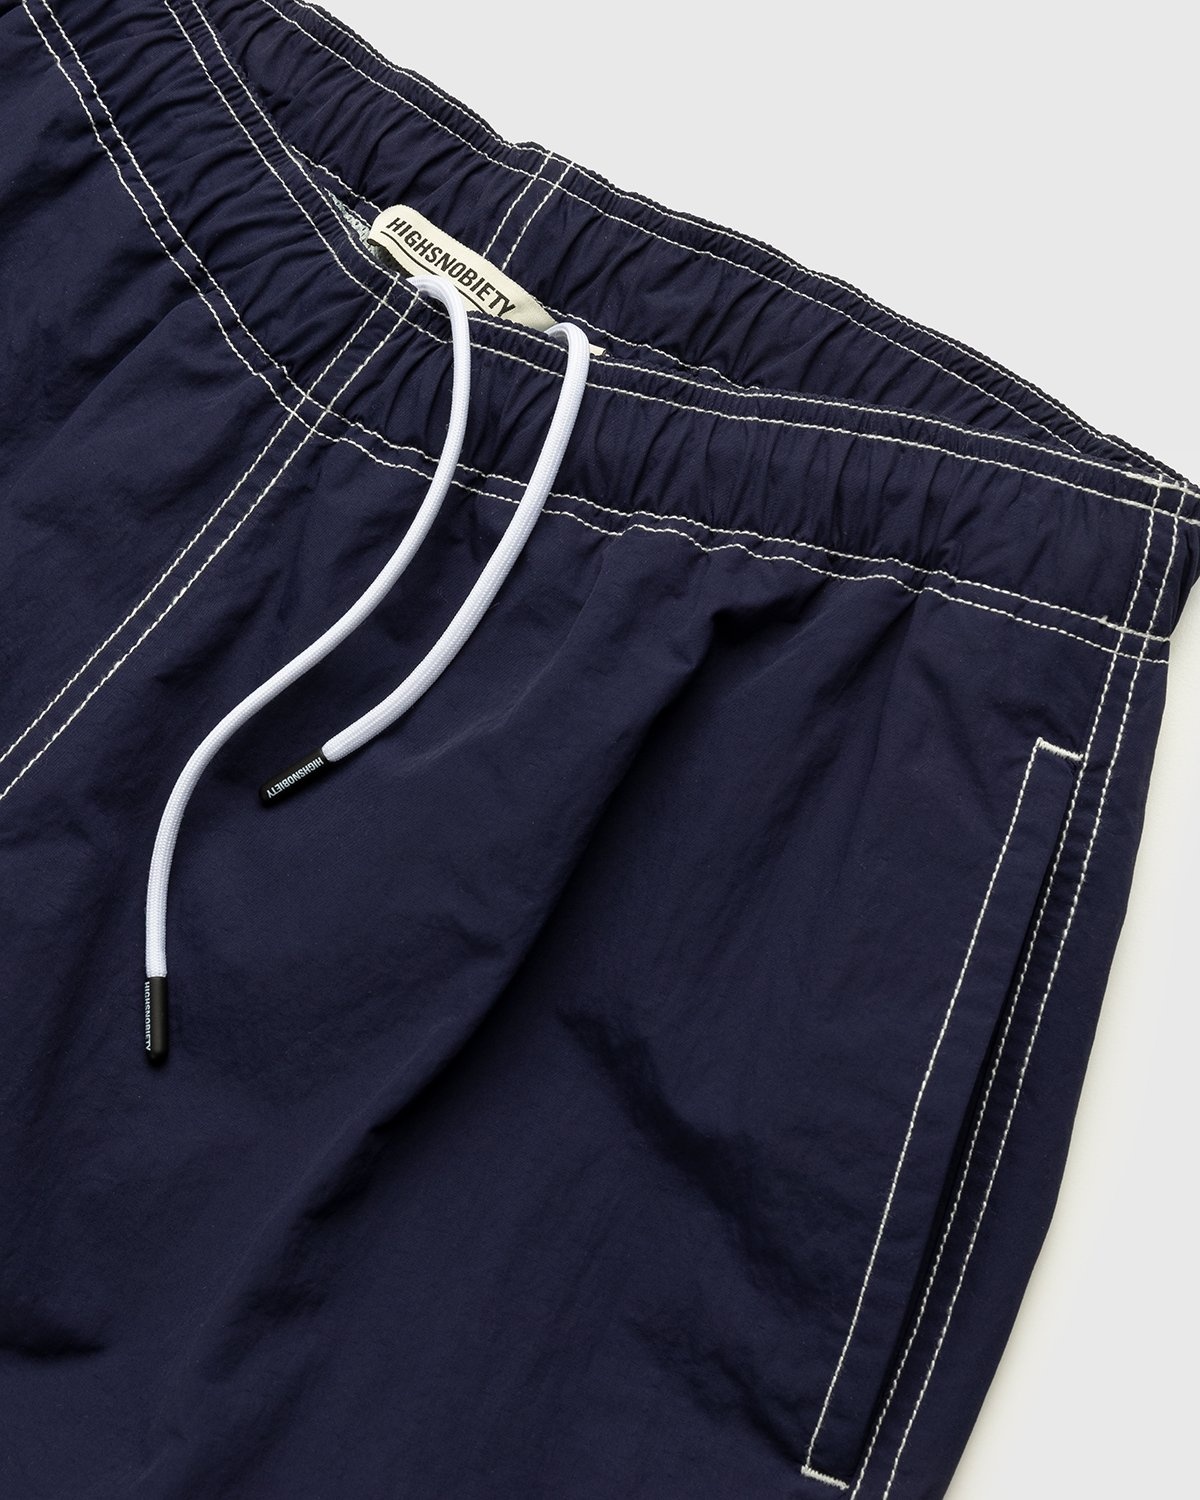 Highsnobiety – Contrast Brushed Nylon Water Shorts Navy - Shorts - Blue - Image 4